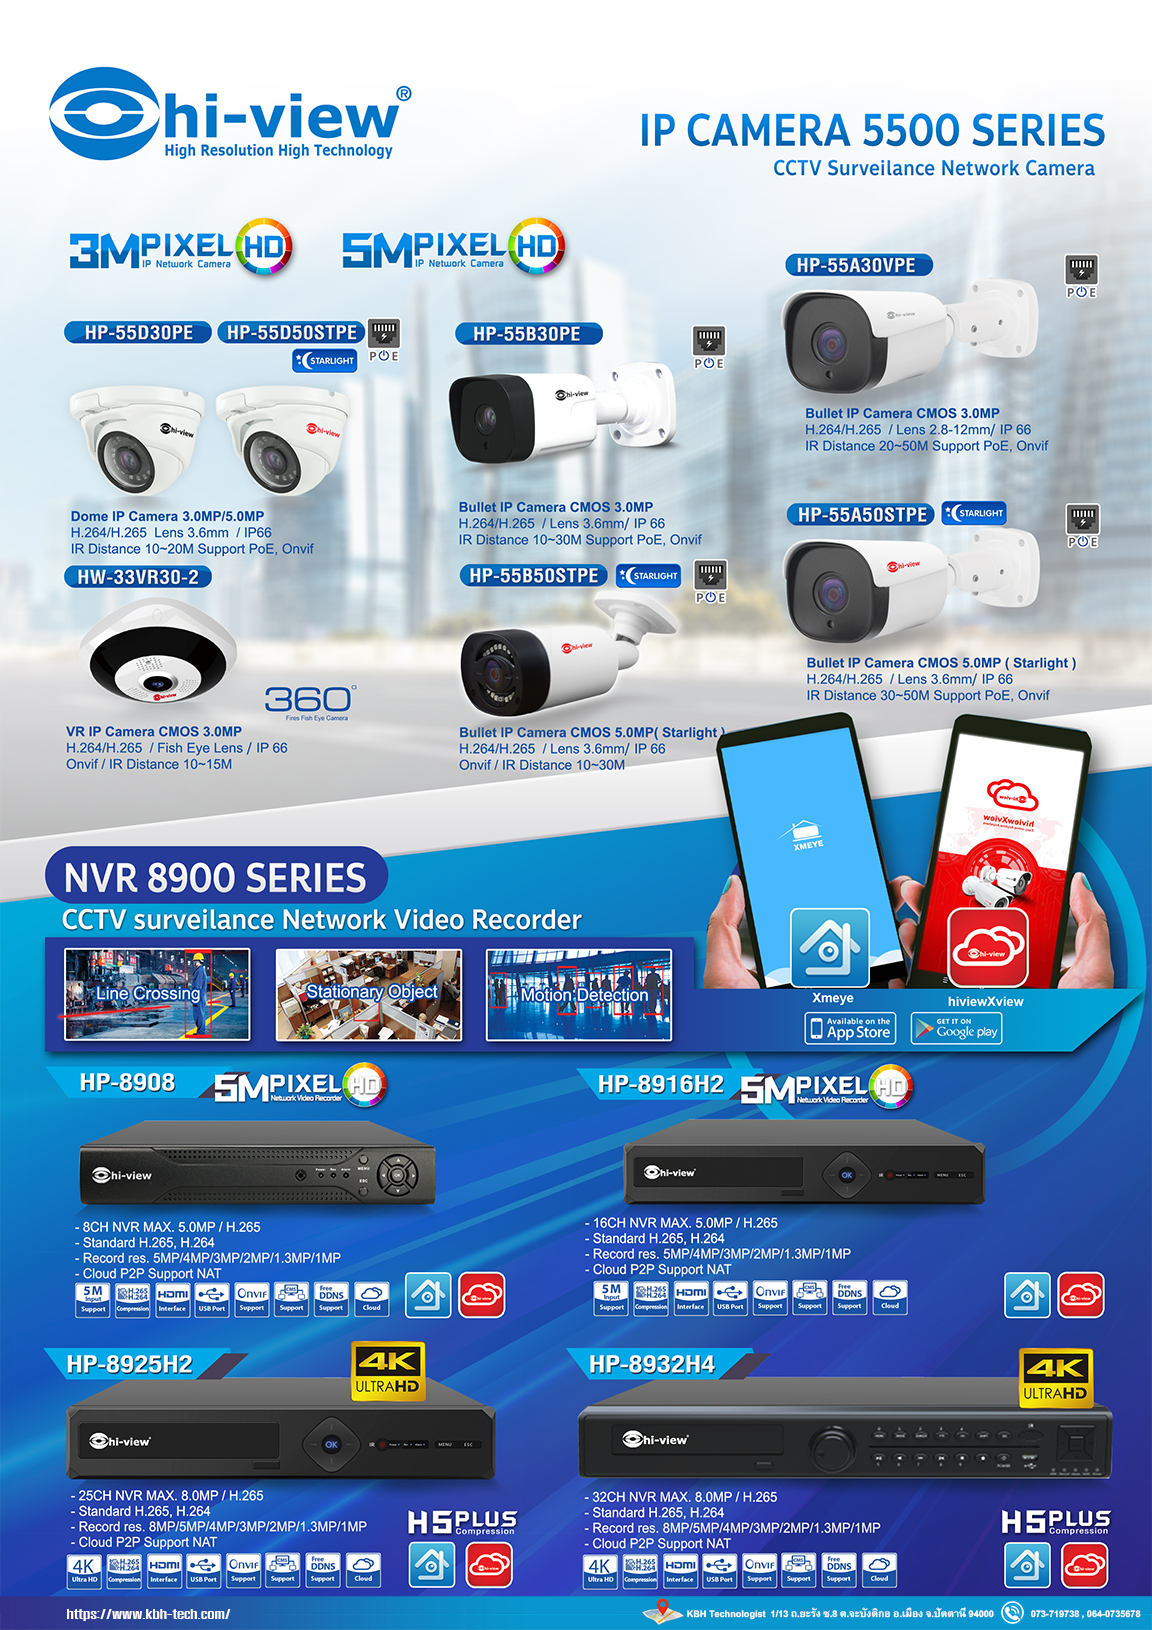 Hi-View IP Camera 5500 Series